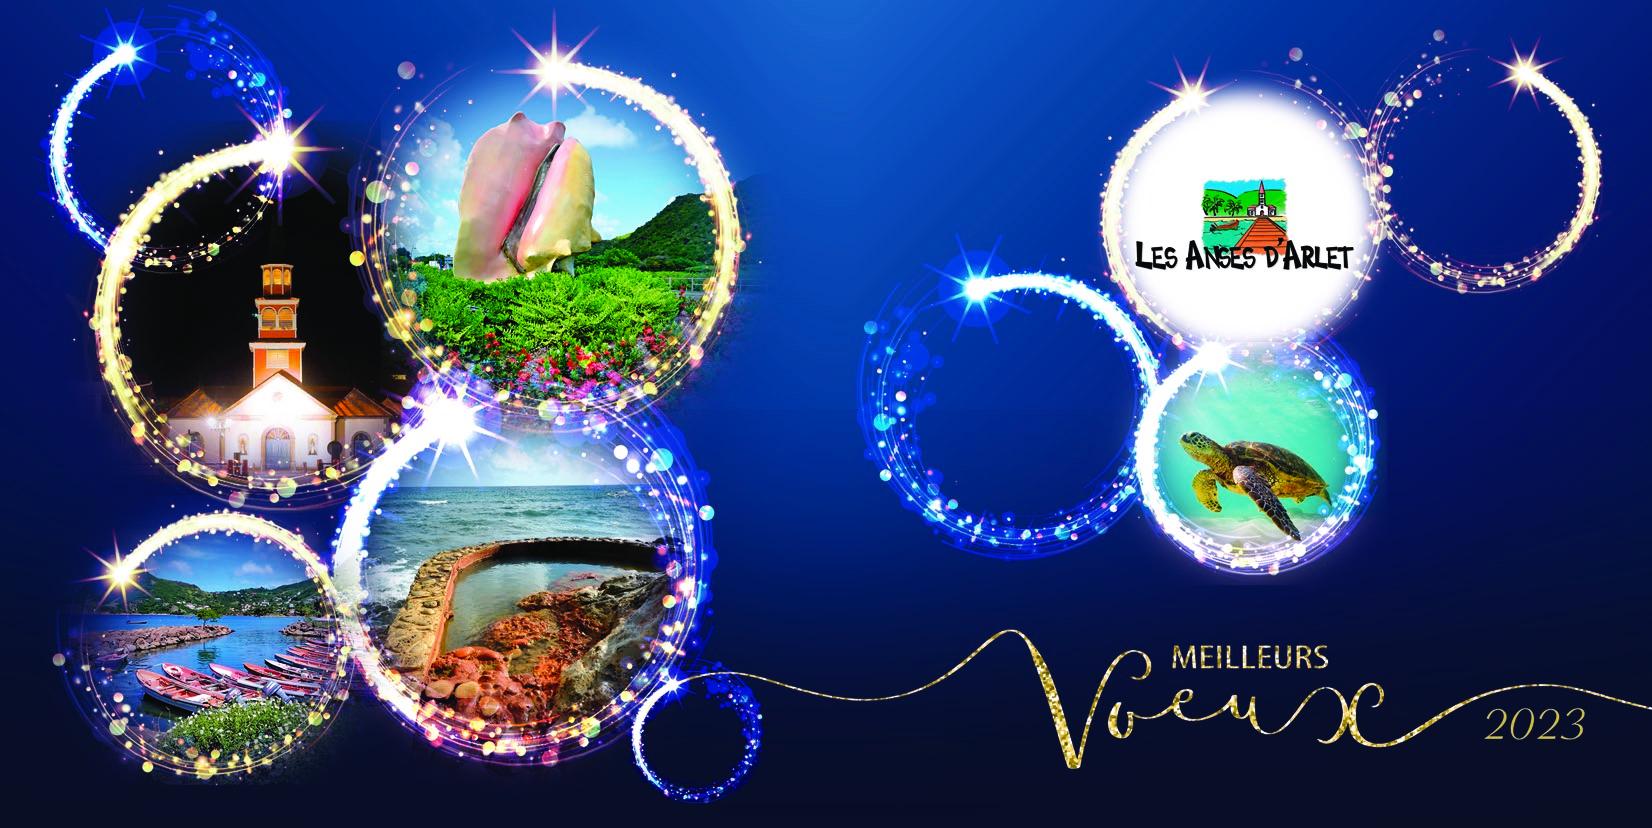 Image de couverture - MEILLEURS VOEUX 2023 | Ville de Les Anses d'Arlet